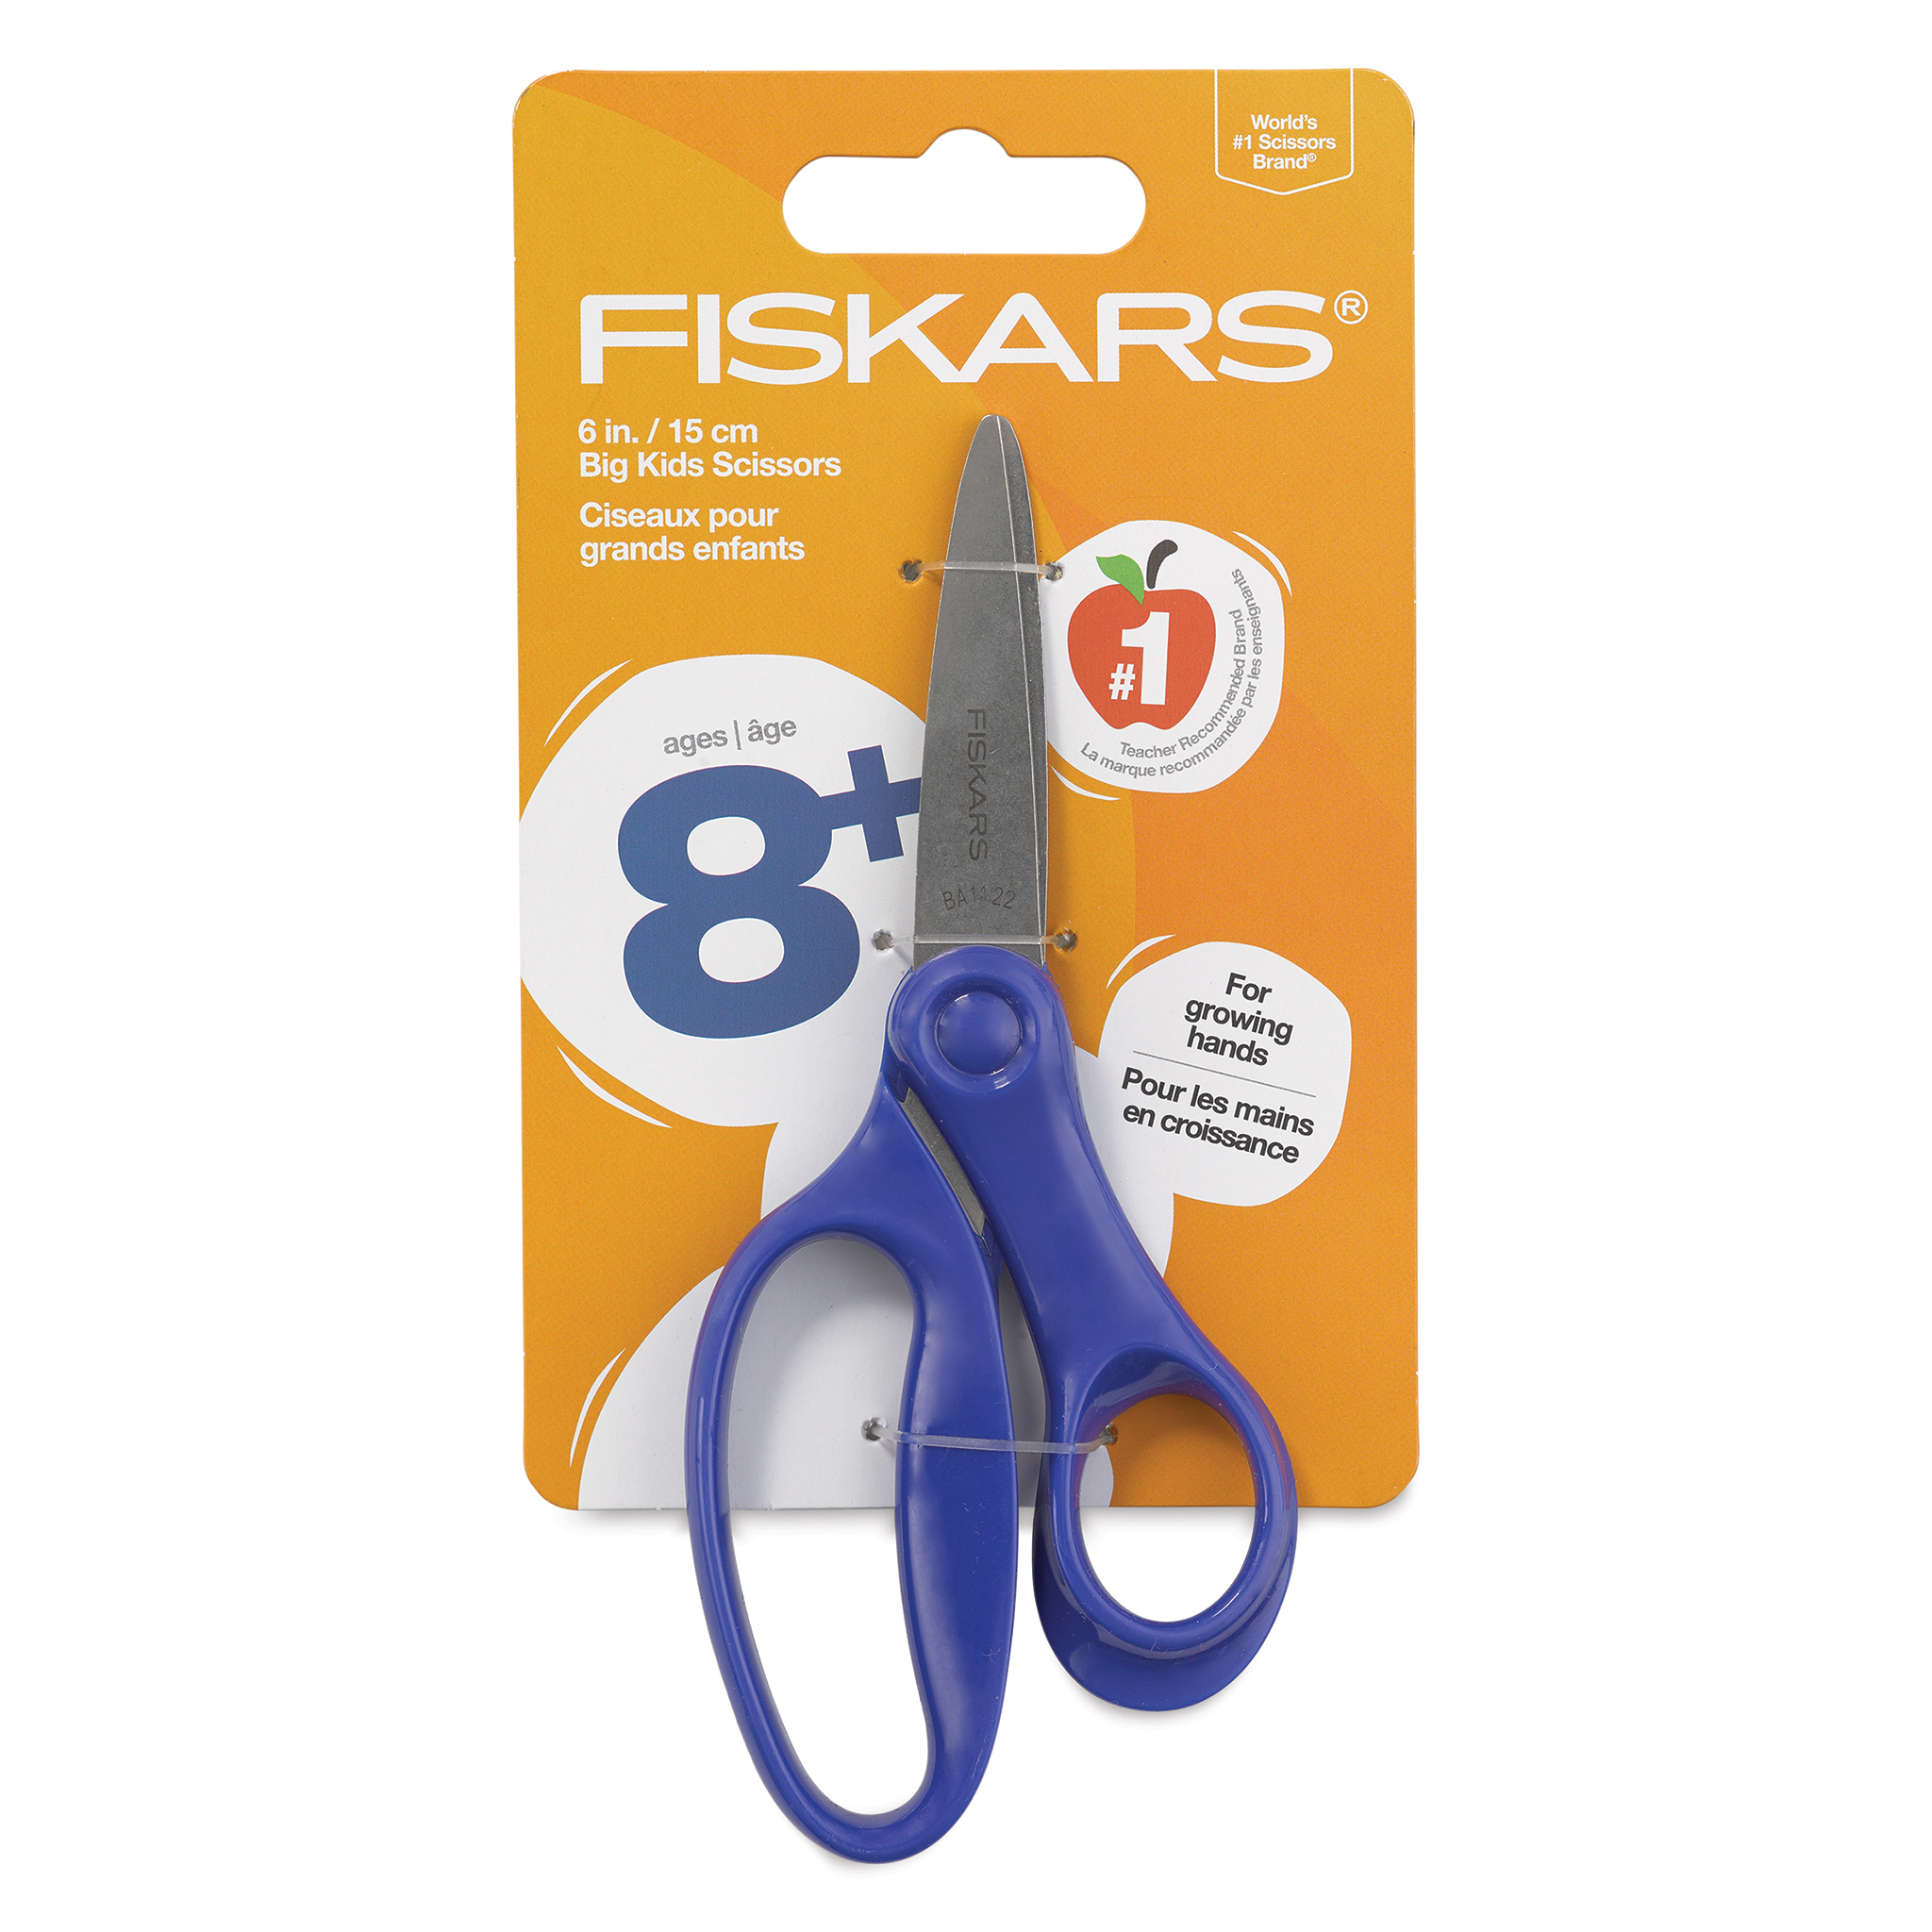 Fiskars Big Kids Scissors, Size: 6 in